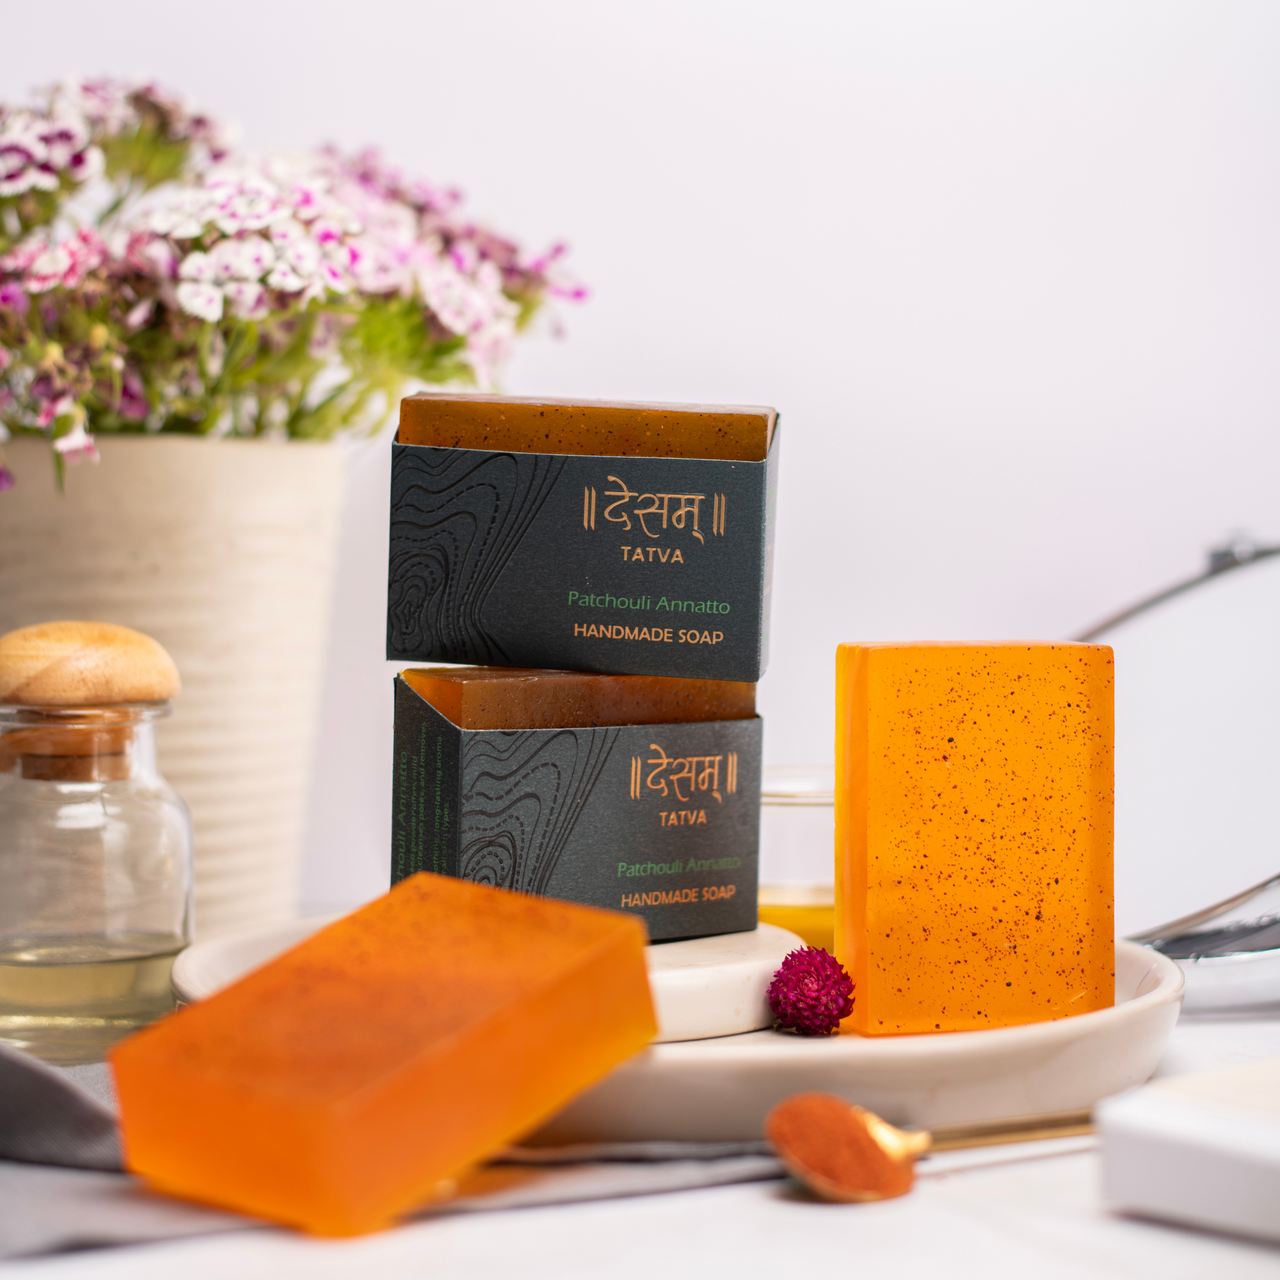 Patchouli & Annatto Natural Skincare Soap